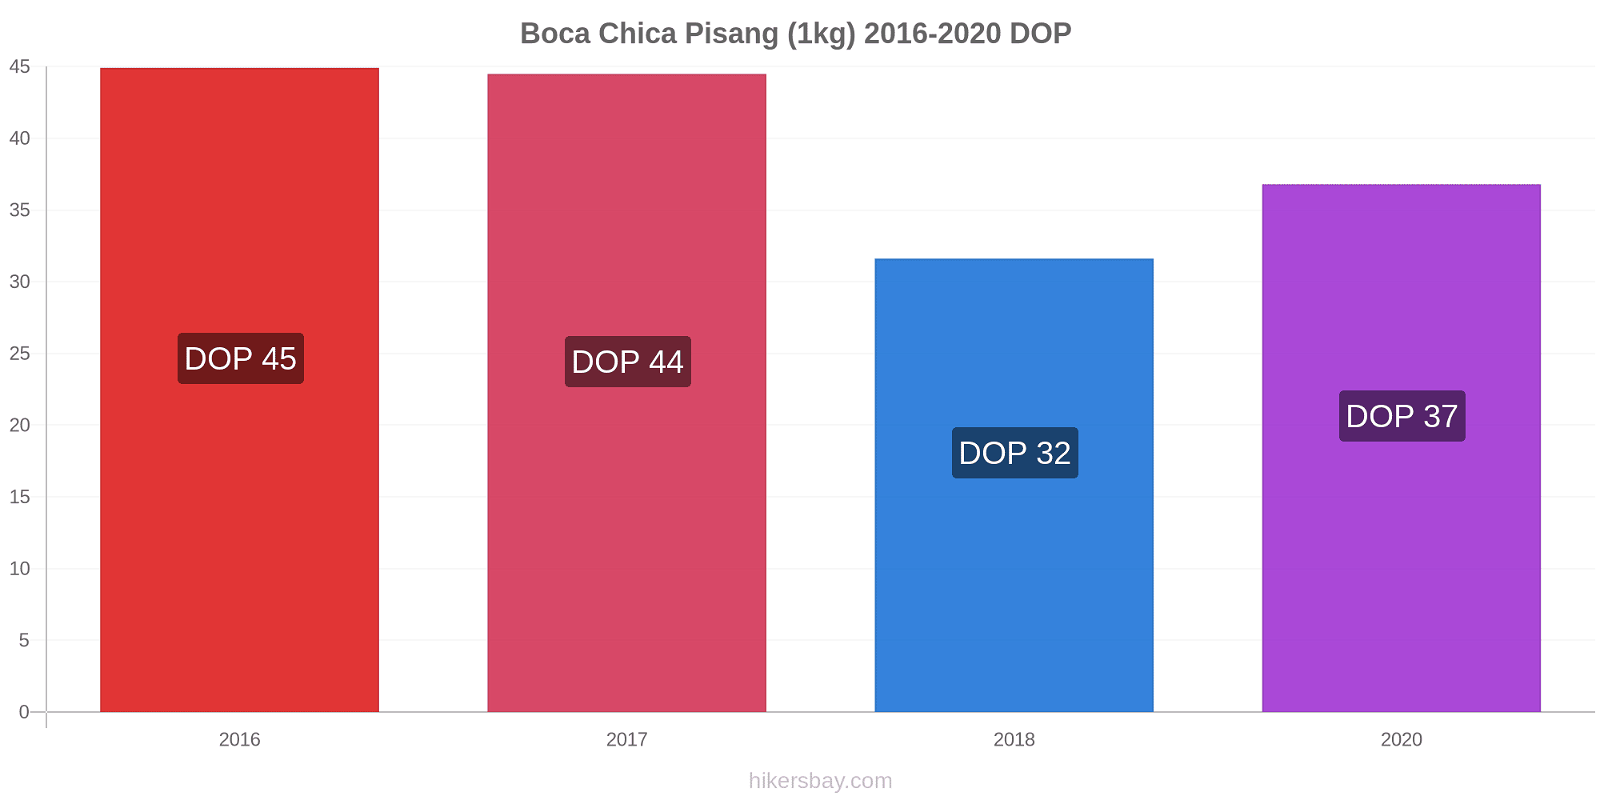 Boca Chica perubahan harga Pisang (1kg) hikersbay.com